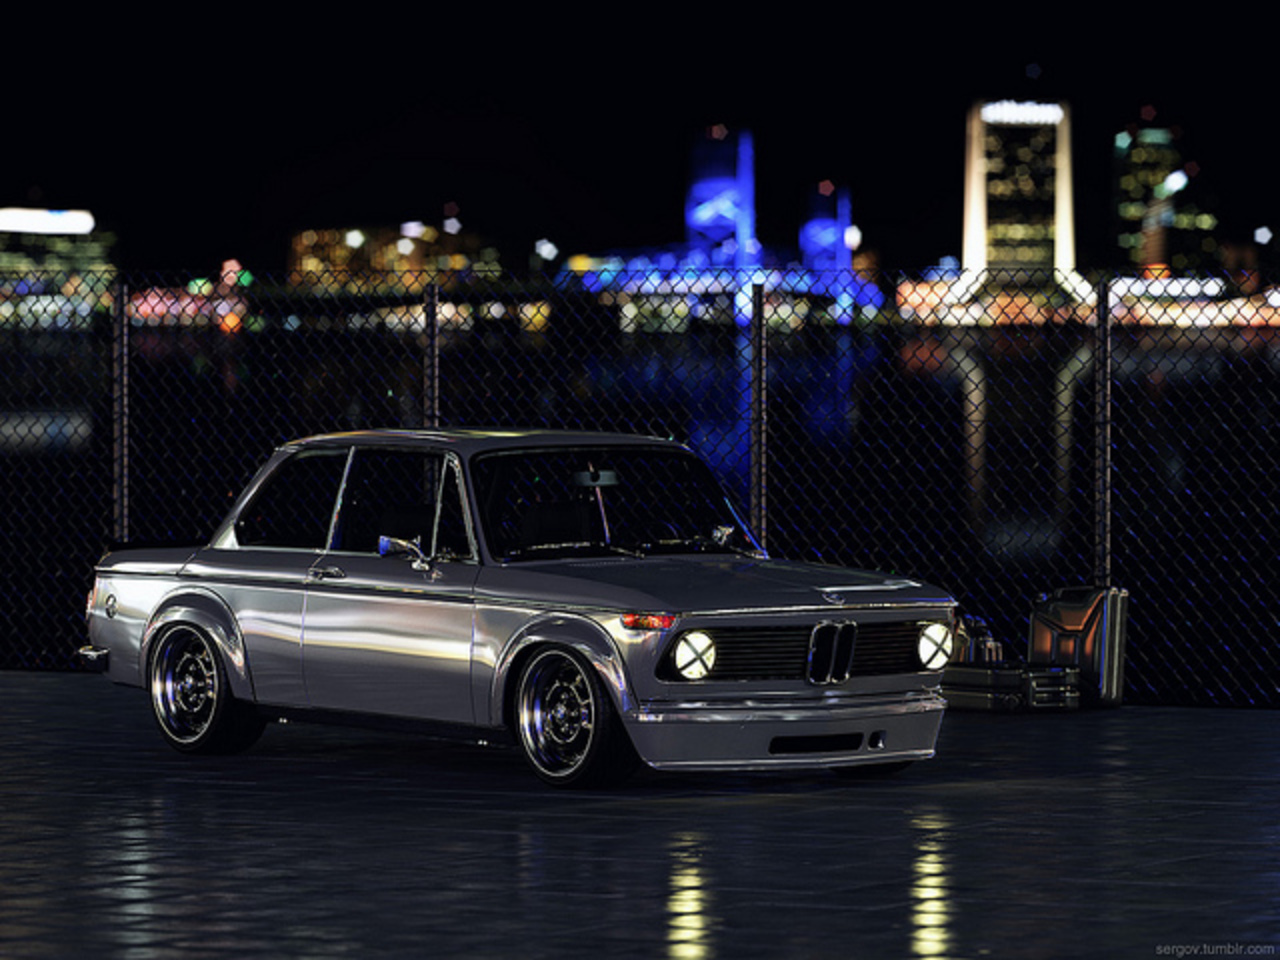 BMW 2002 Turbo CGi night | Flickr - Photo Sharing!